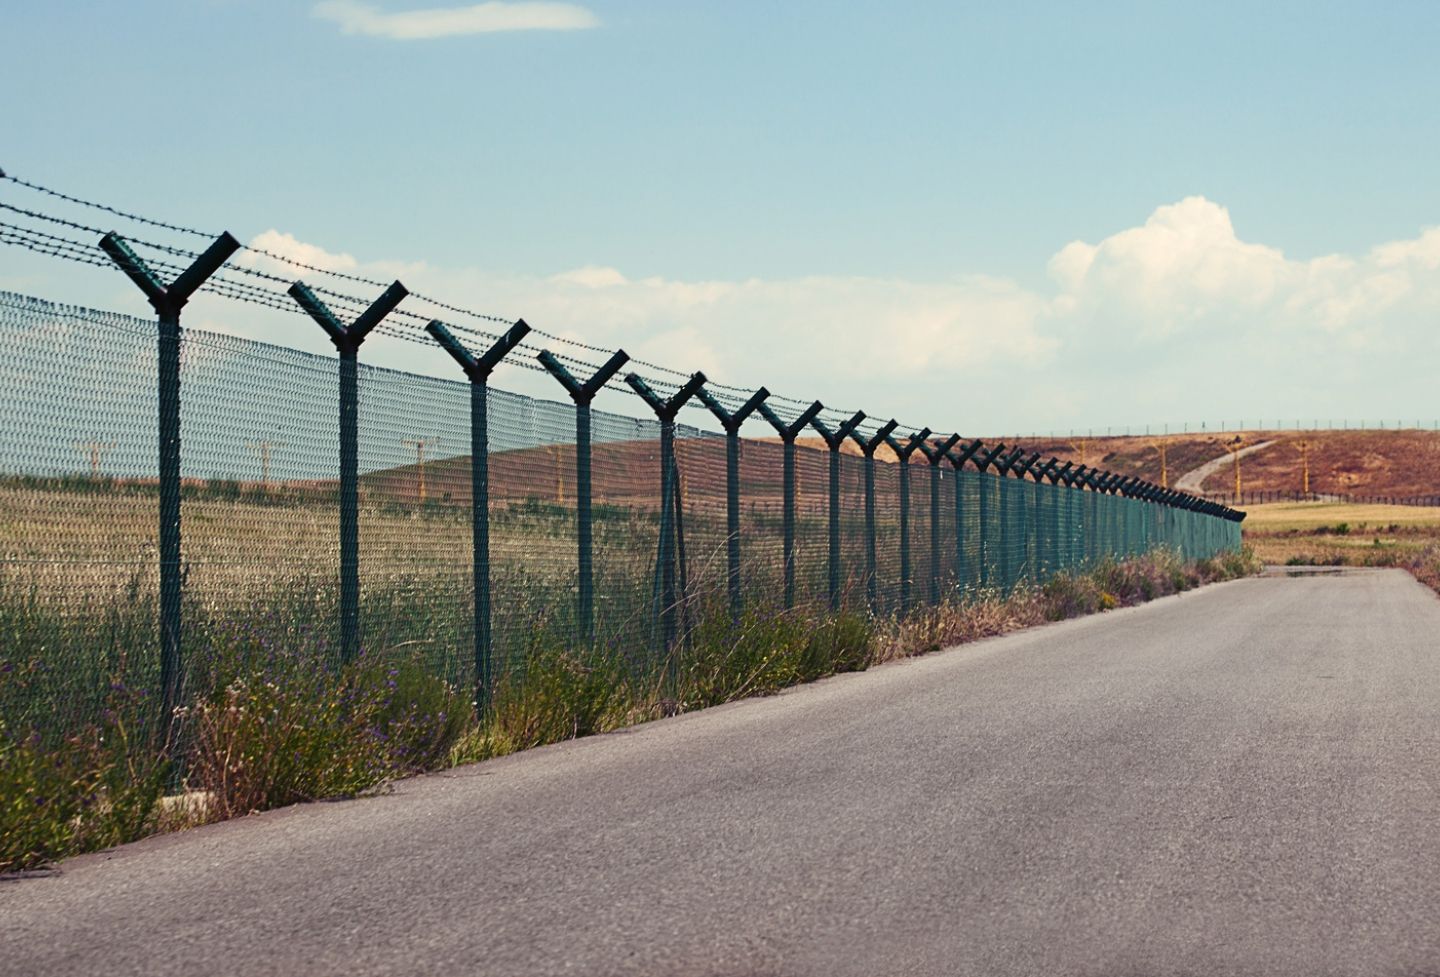 Border fencing